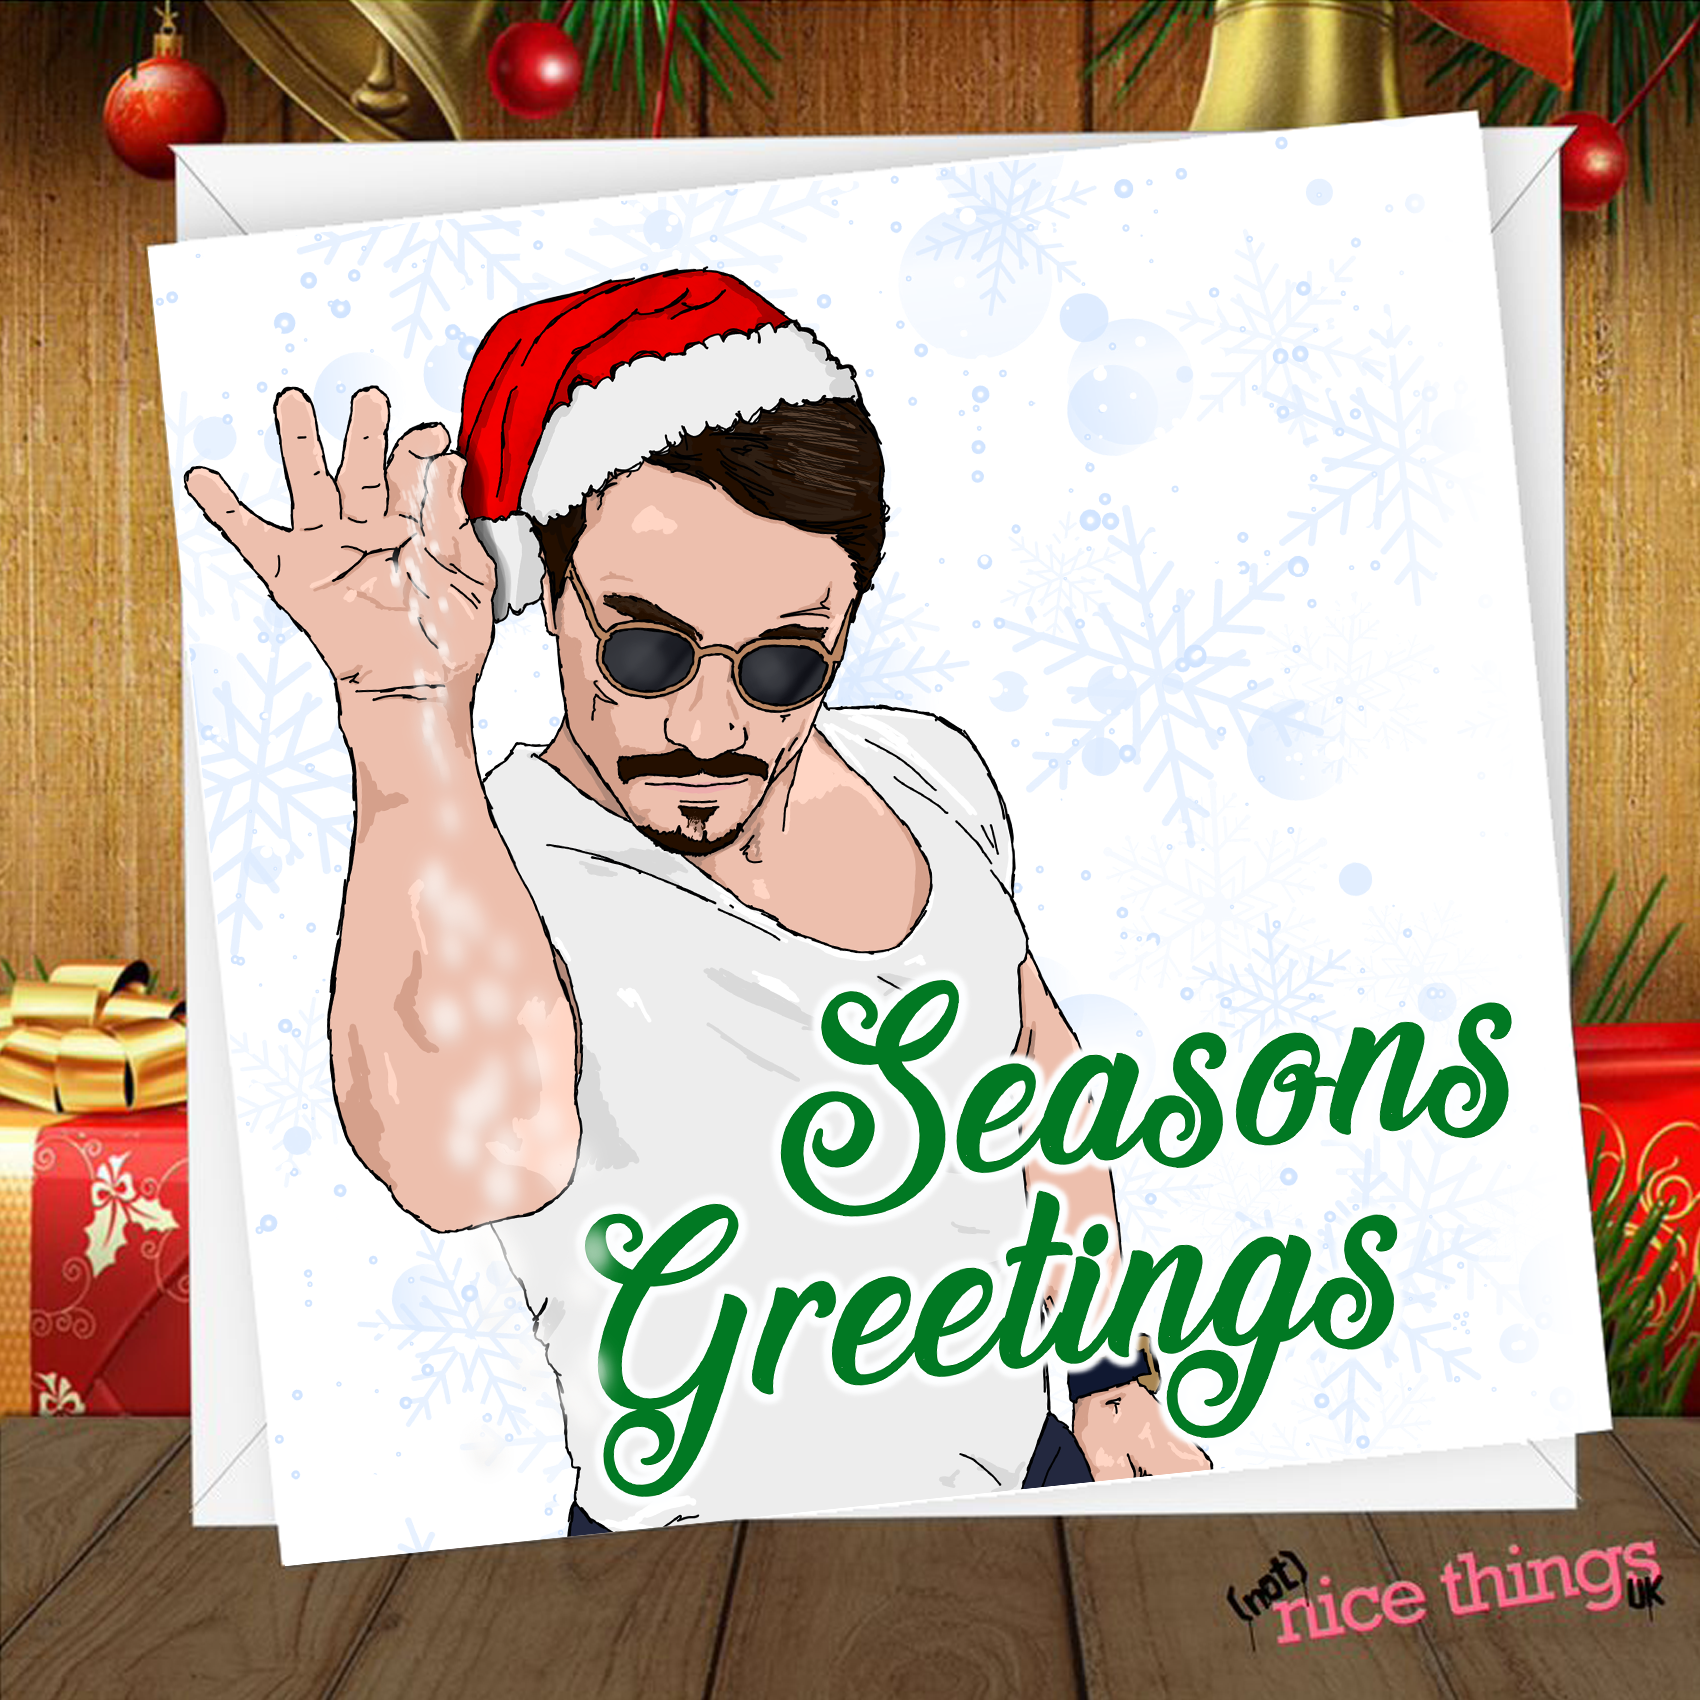 Salt Bae Chridtmas Card, Nusr Et Chirstmas Dinner Card, Meme Christmas Card, Christmas Card Meme, Christmas Meme Card, Meme Christmas Gift, Salt Bae Christmas Gift